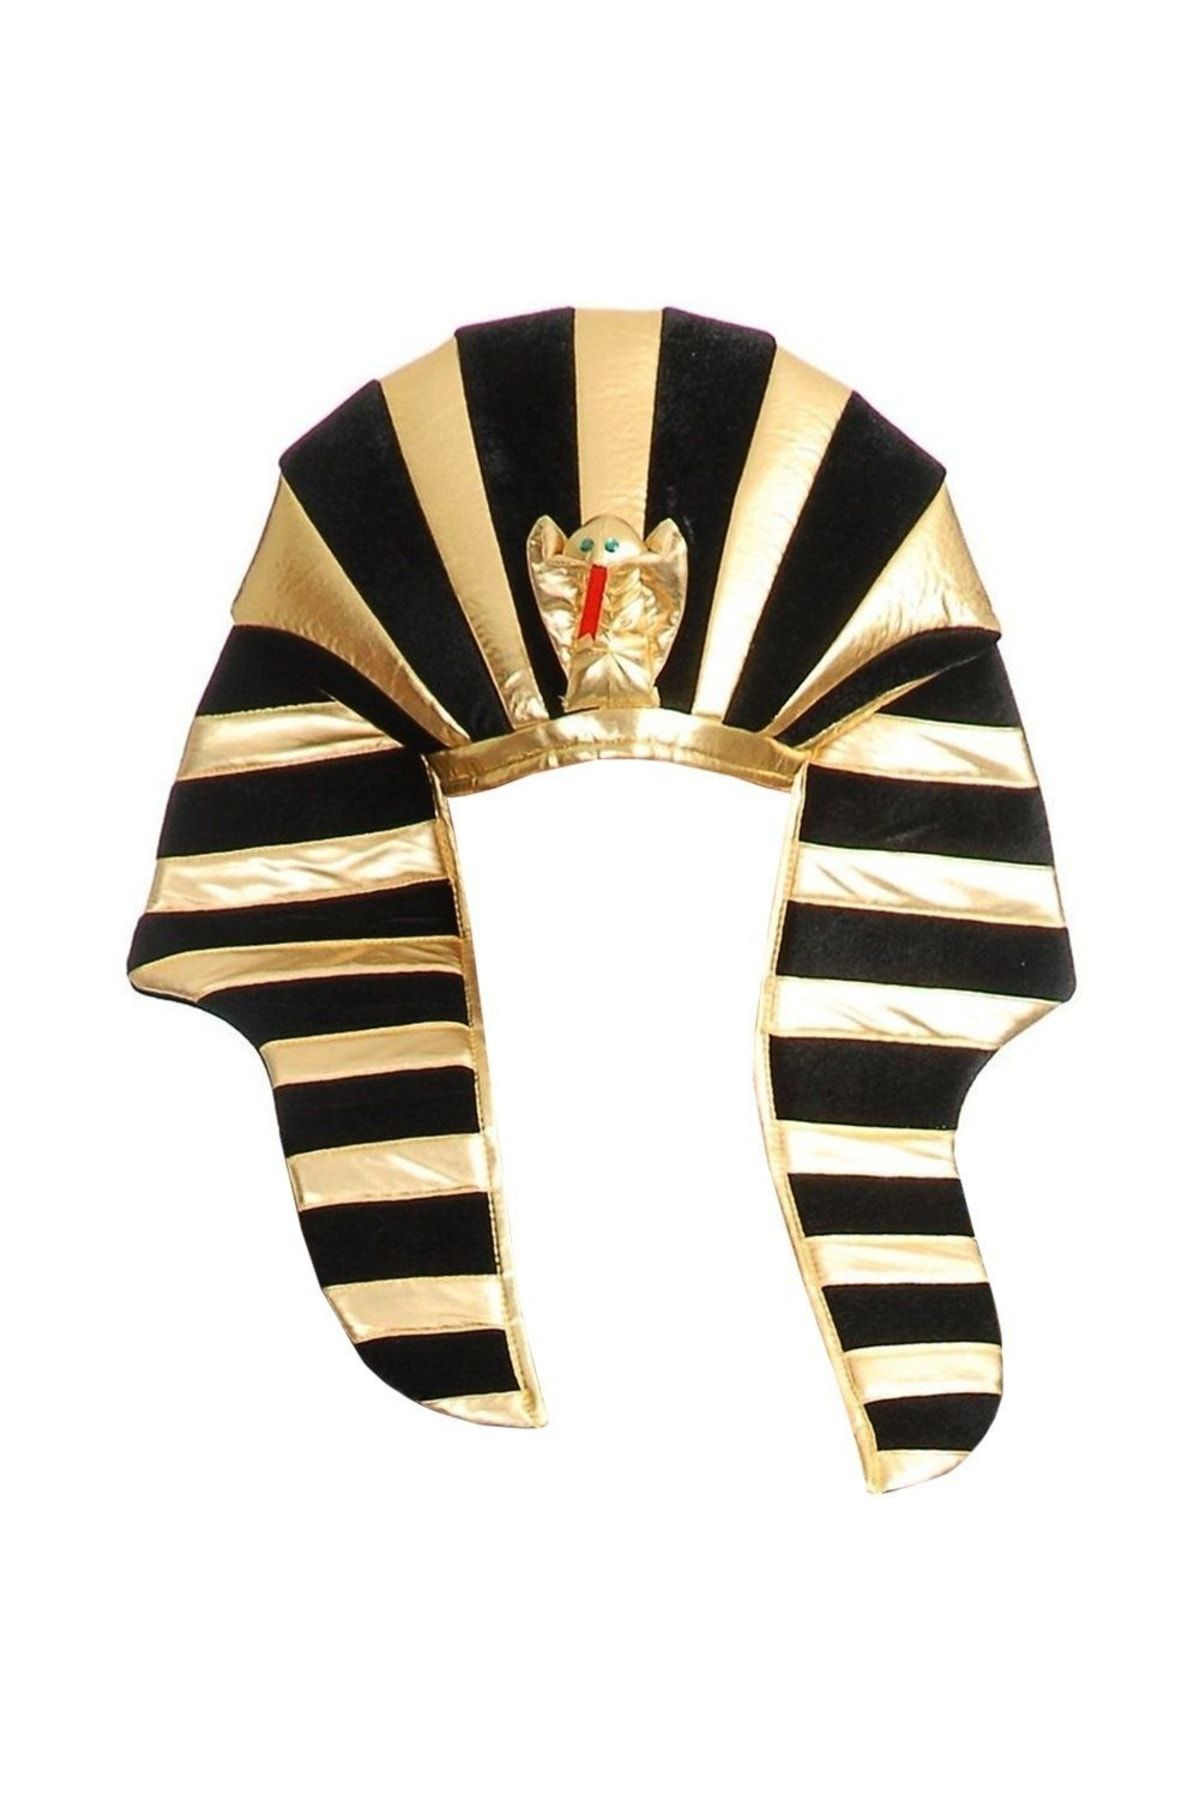 YTSHOP Firavun Şapka Mısırlı.